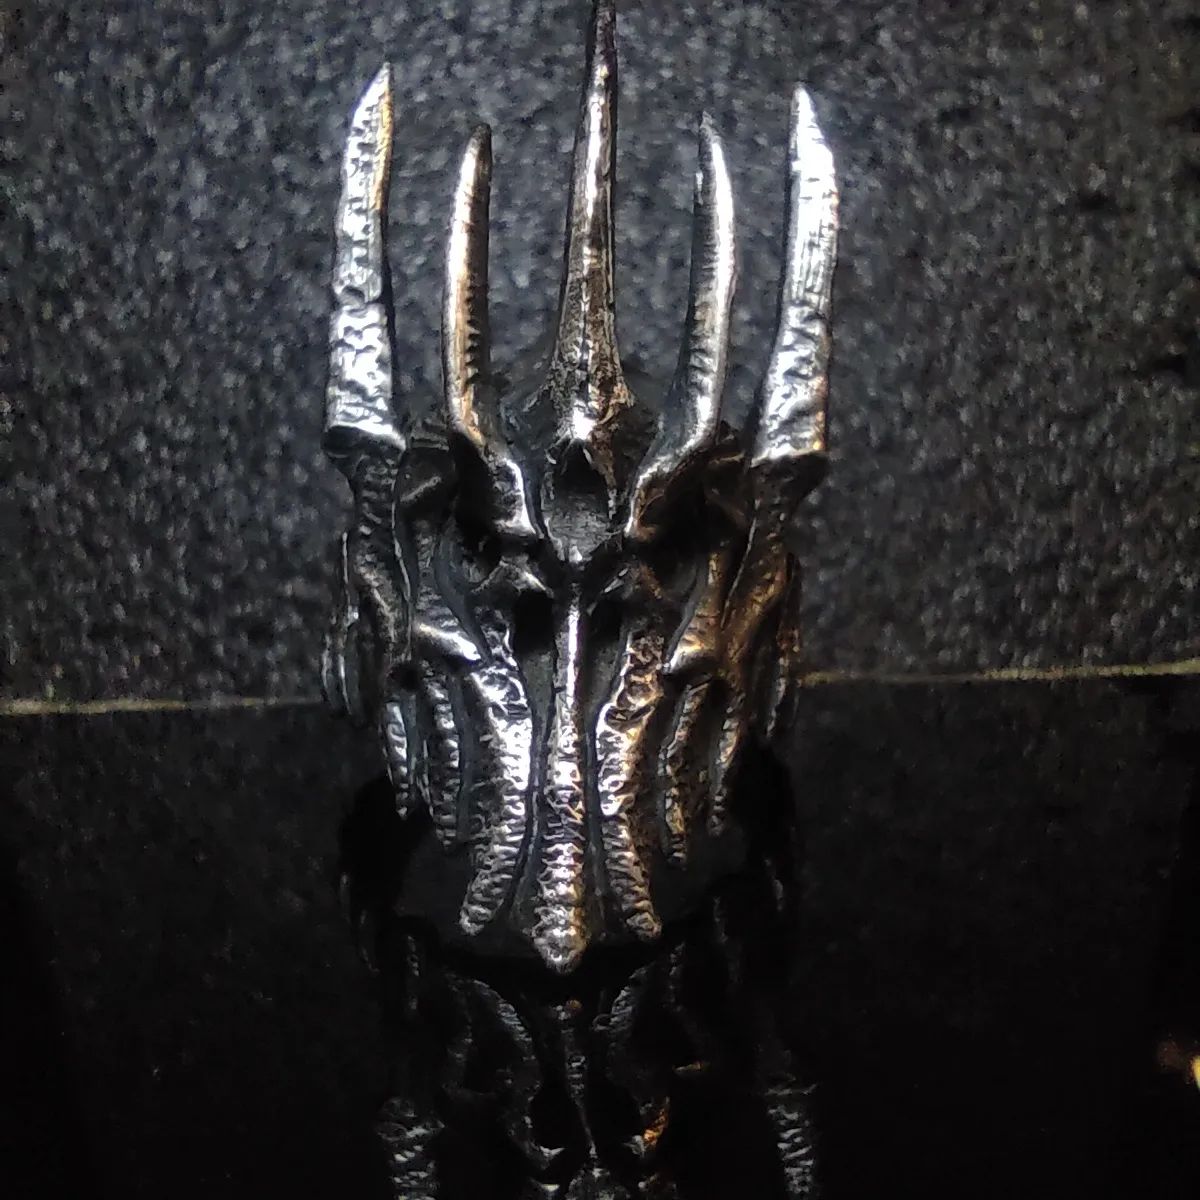 Sauron 

El señor oscuro
Siervo de morgoth

Anillo del casco de sauron forjado a mano en plata a la medida.

Inspirada e